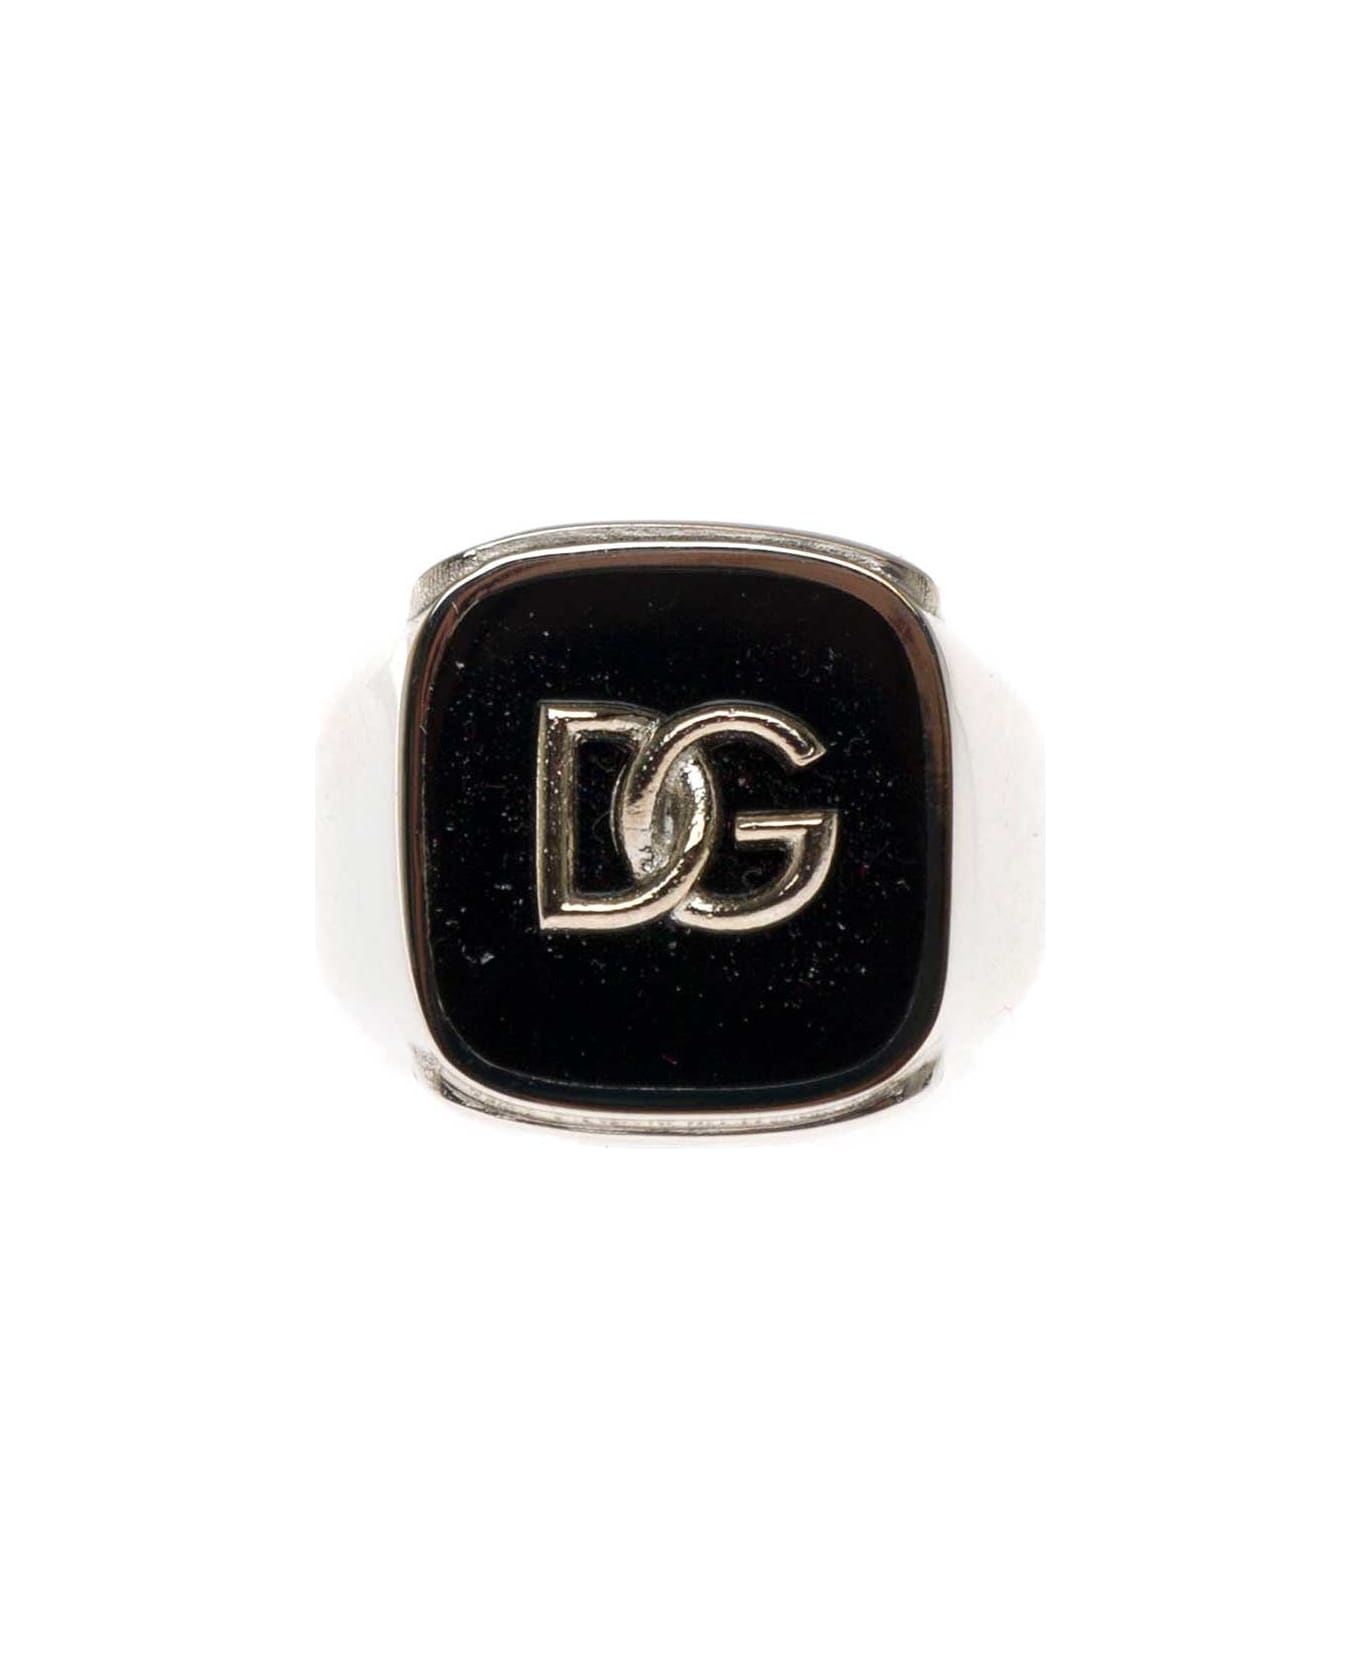 Dolce & Gabbana Man's Black Enameled Brass Ring With Logo - Metallic